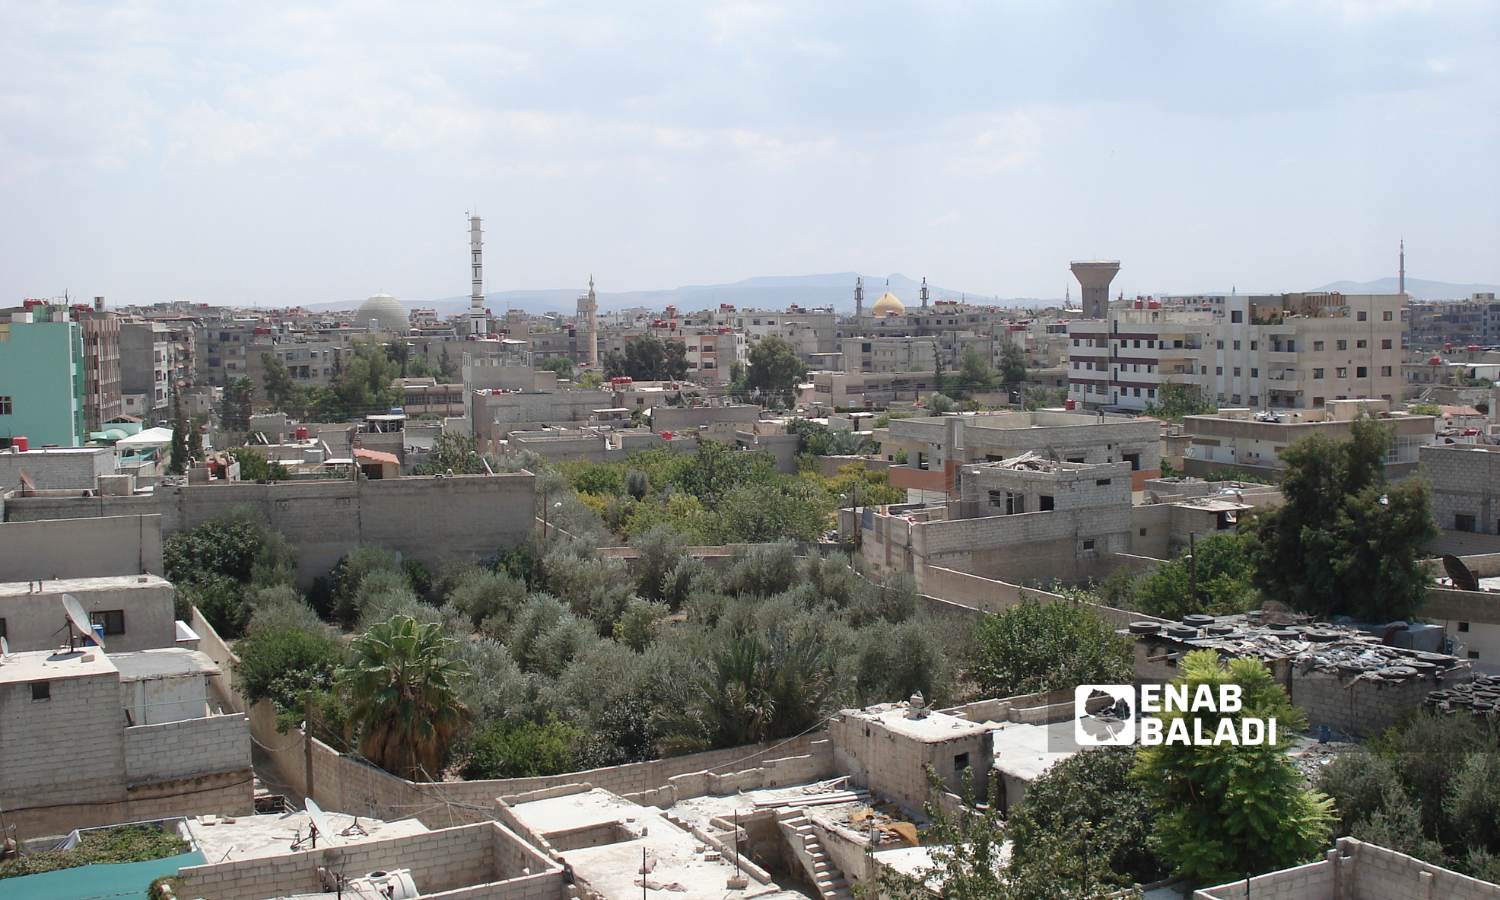 أحياء داريا المدمرة بعد مجزرة ارتكبتها قوات النظام السوري - 25 من آب 2012 (عنب بلدي)
